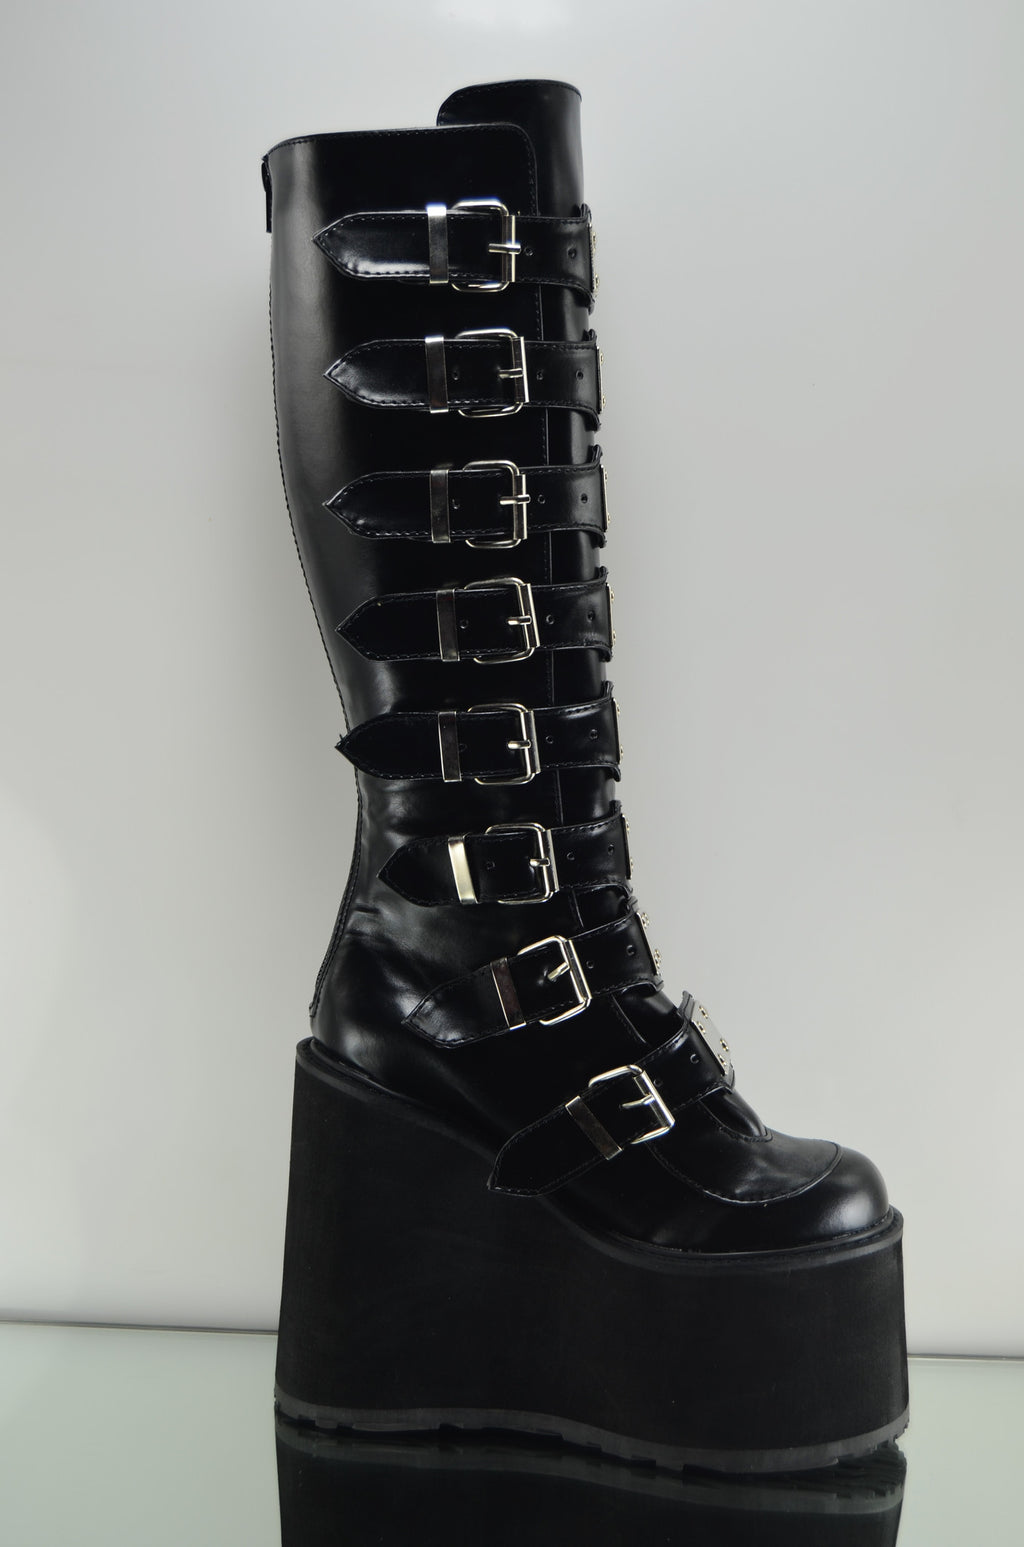 Swing 815 Black Multi Strap Goth Punk Knee Boot 5.5" Platform Vegan - Totally Wicked Footwear